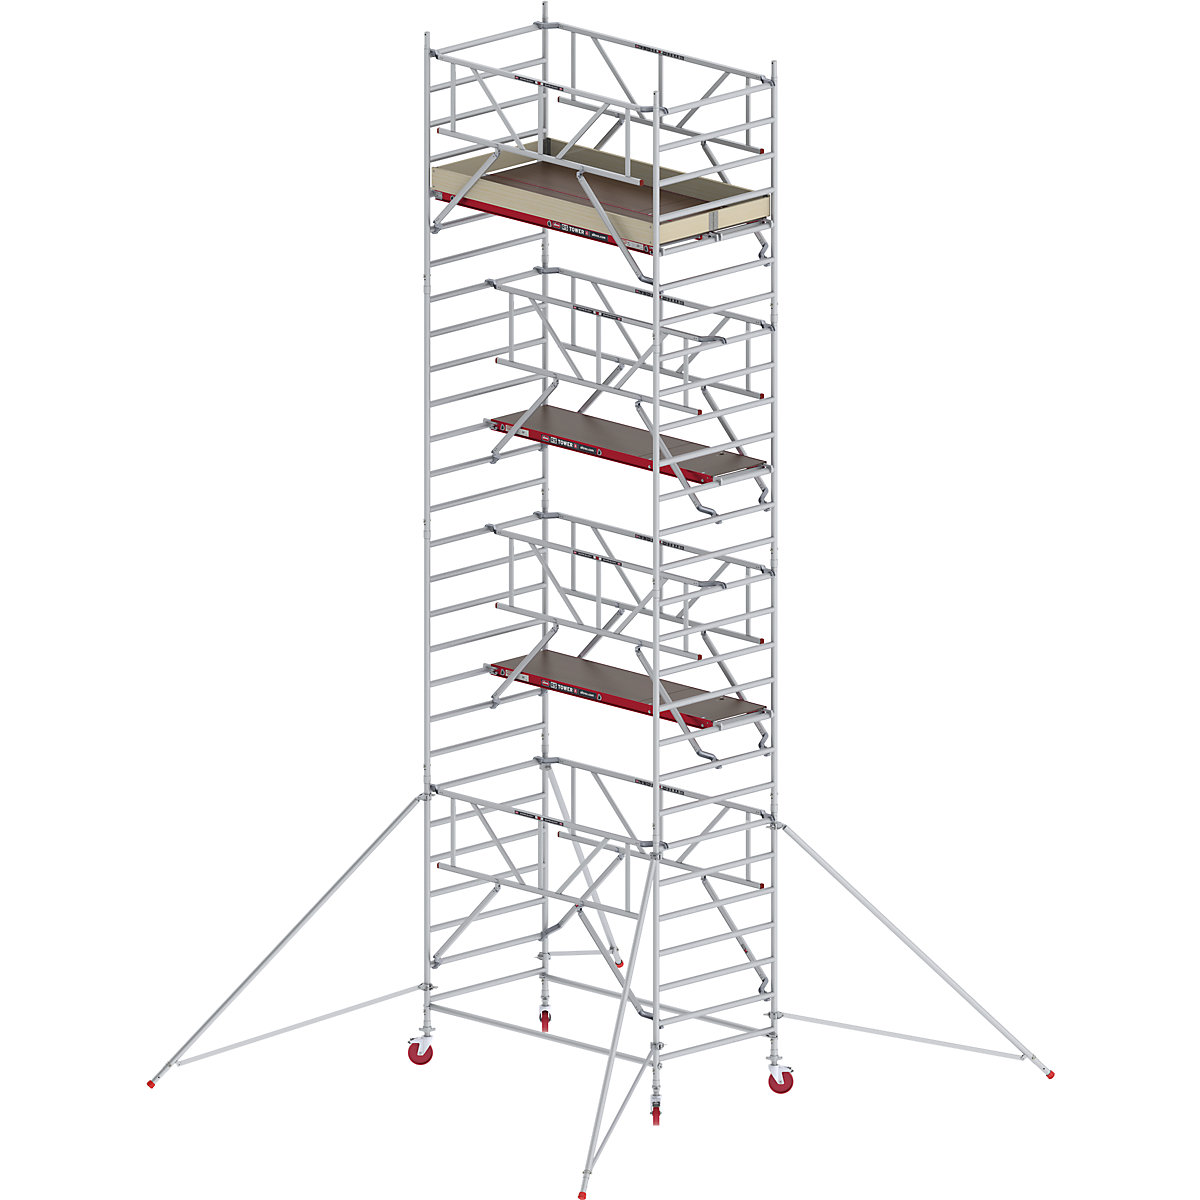 Trabattello mobile RS TOWER 42 largo con Safe-Quick® – Altrex, piattaforma in legno, lunghezza 2,45 m, altezza di lavoro 9,20 m-7